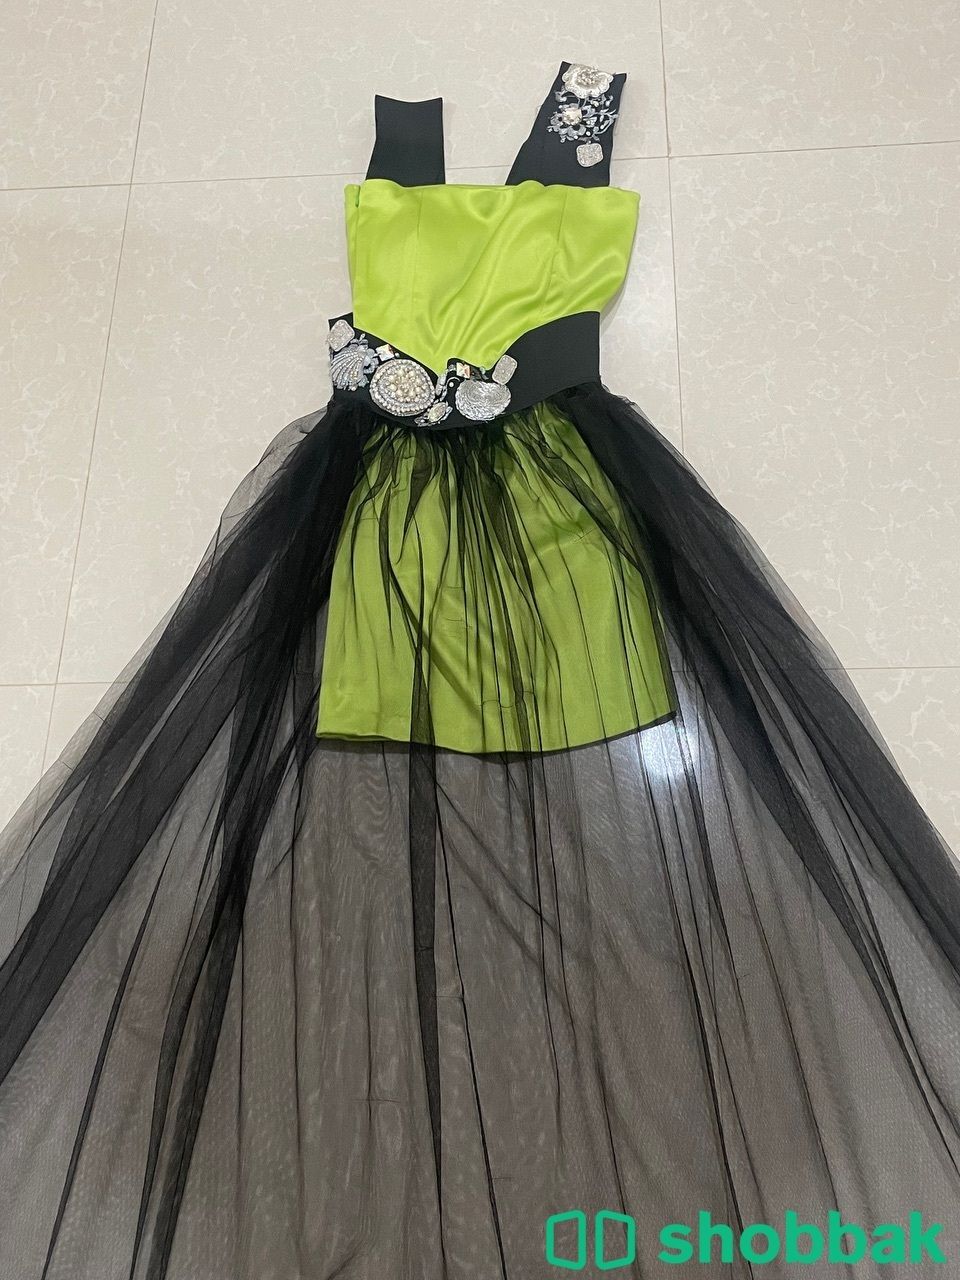 فستان للبيع استخدام نظيف من المصصمه ام طلال ( بيلسان)  Shobbak Saudi Arabia